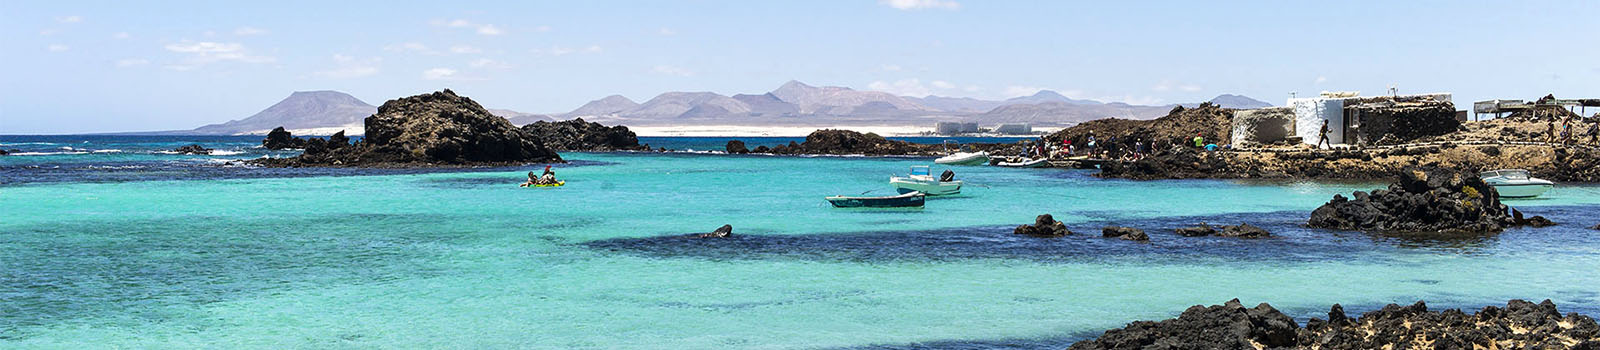 Isla de Lobos Fuerteventura – Caleta de la Rasca.